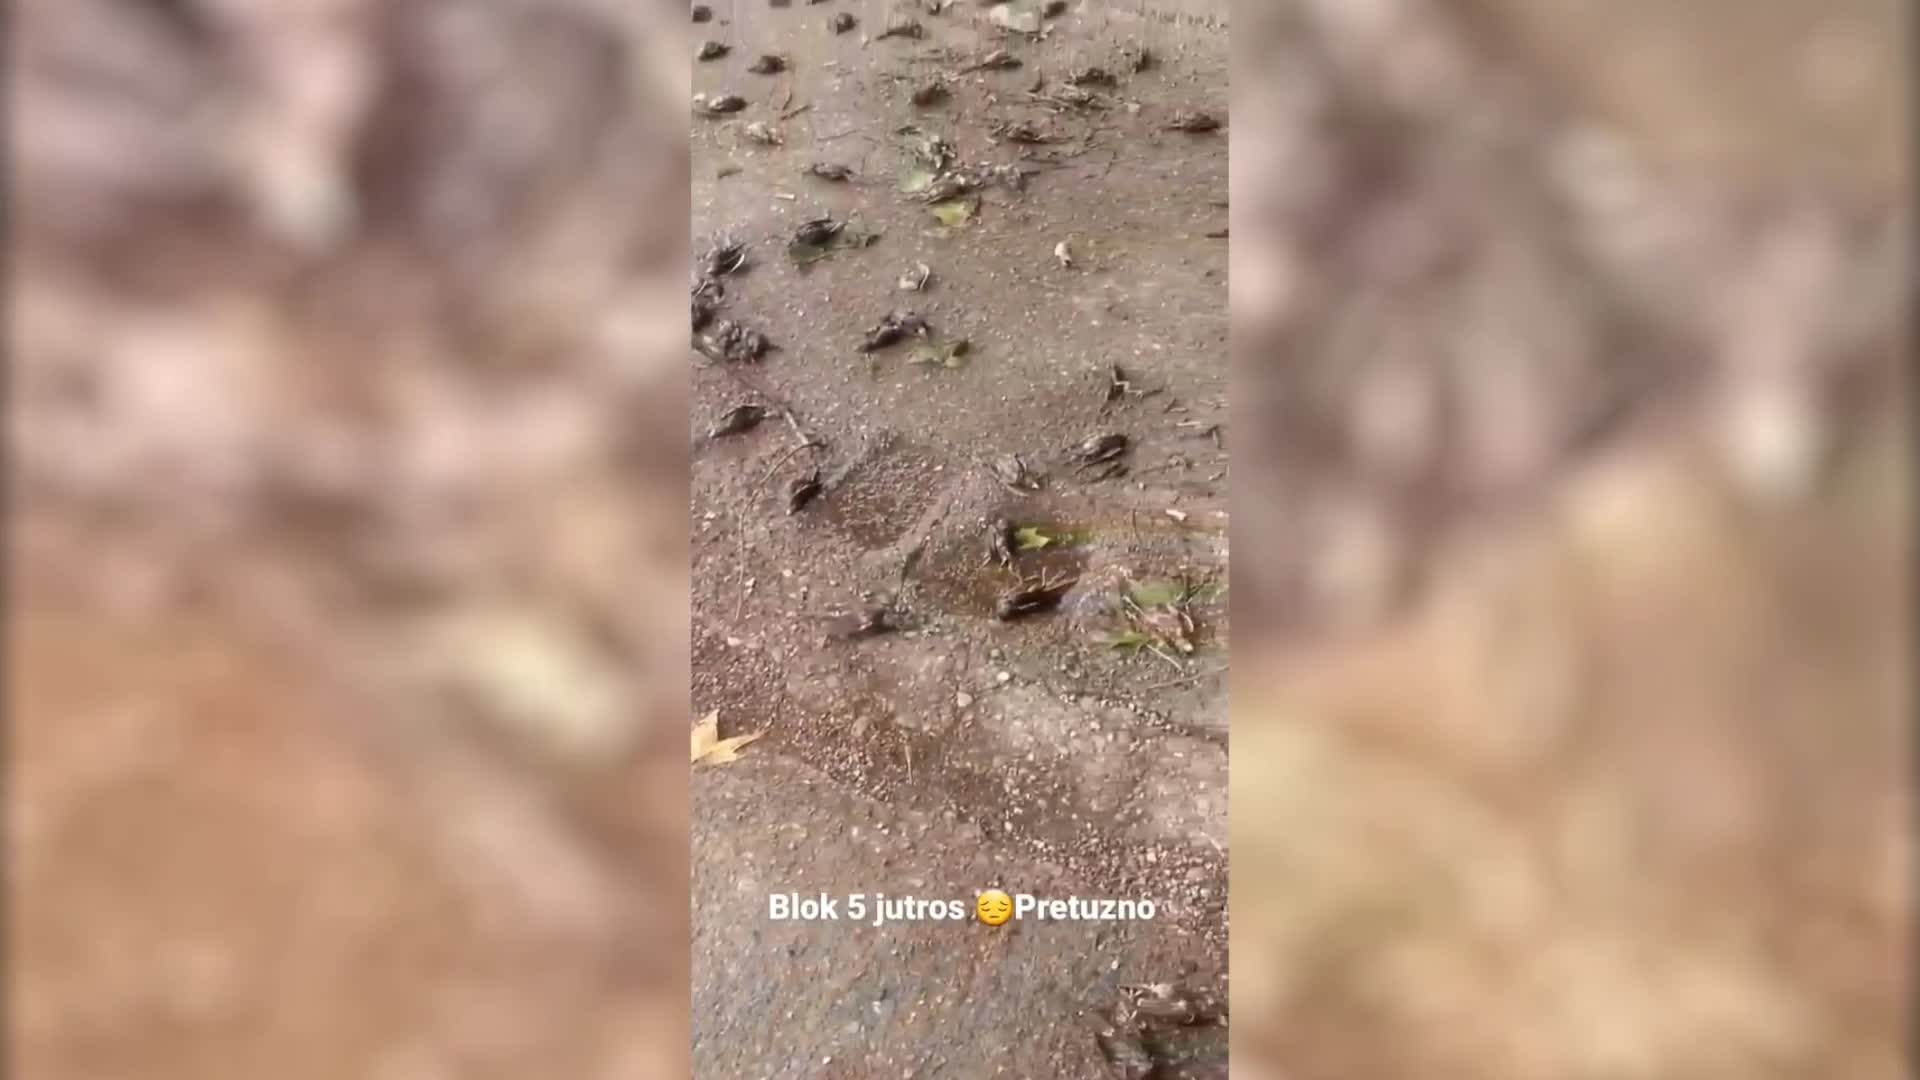  Hiljade mrtvih ptica preplavile Podgoricu!  (UZNEMIRUJUĆI VIDEO) 